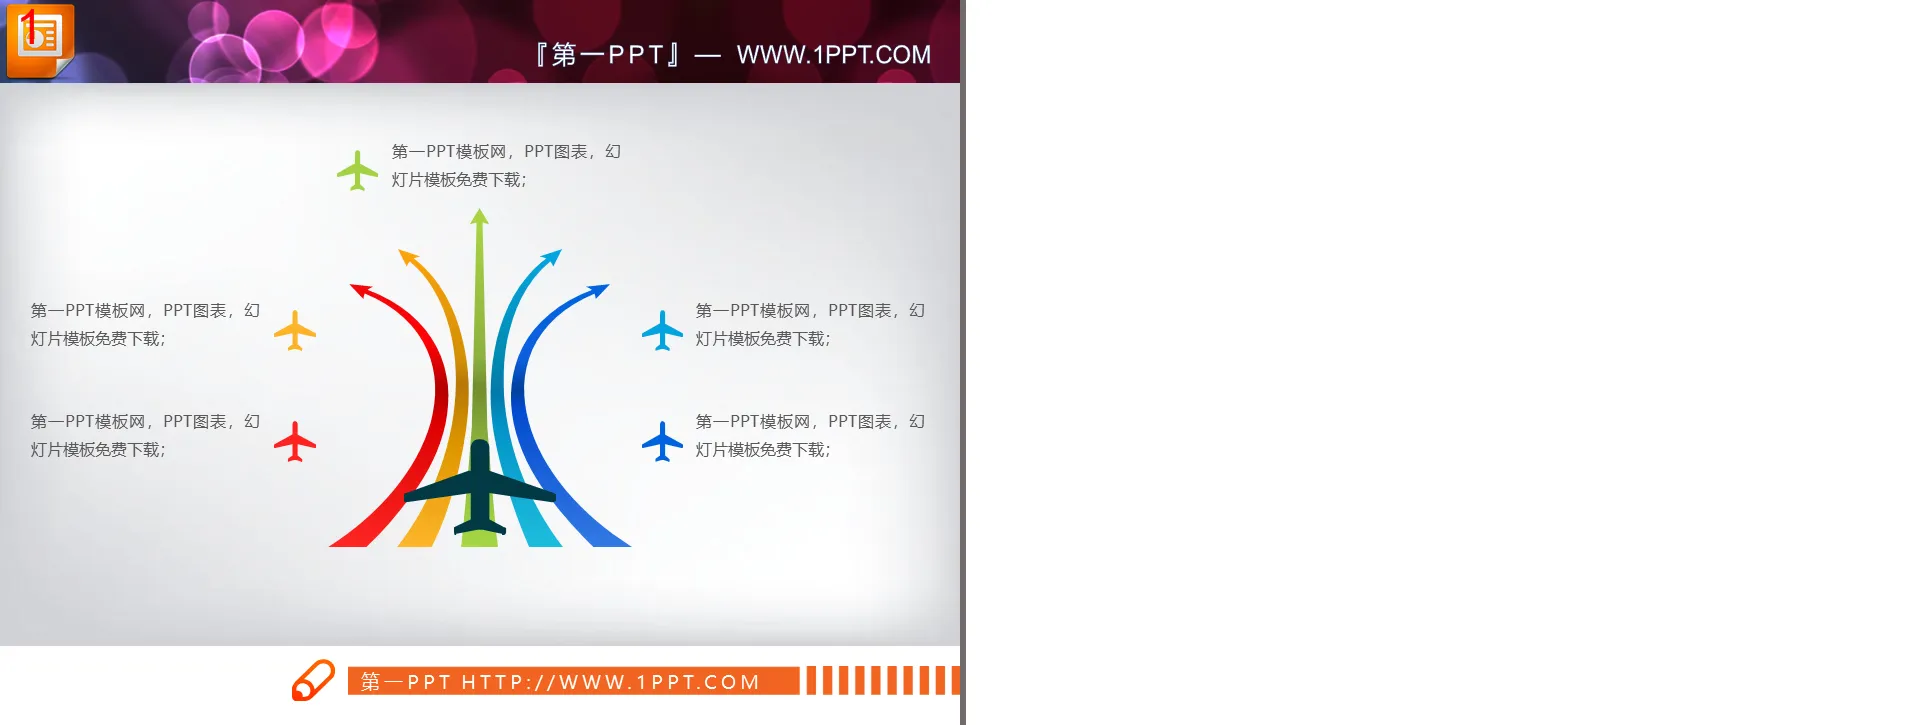 五条跑到箭头飞机起飞样式的扩散关系PPT图表